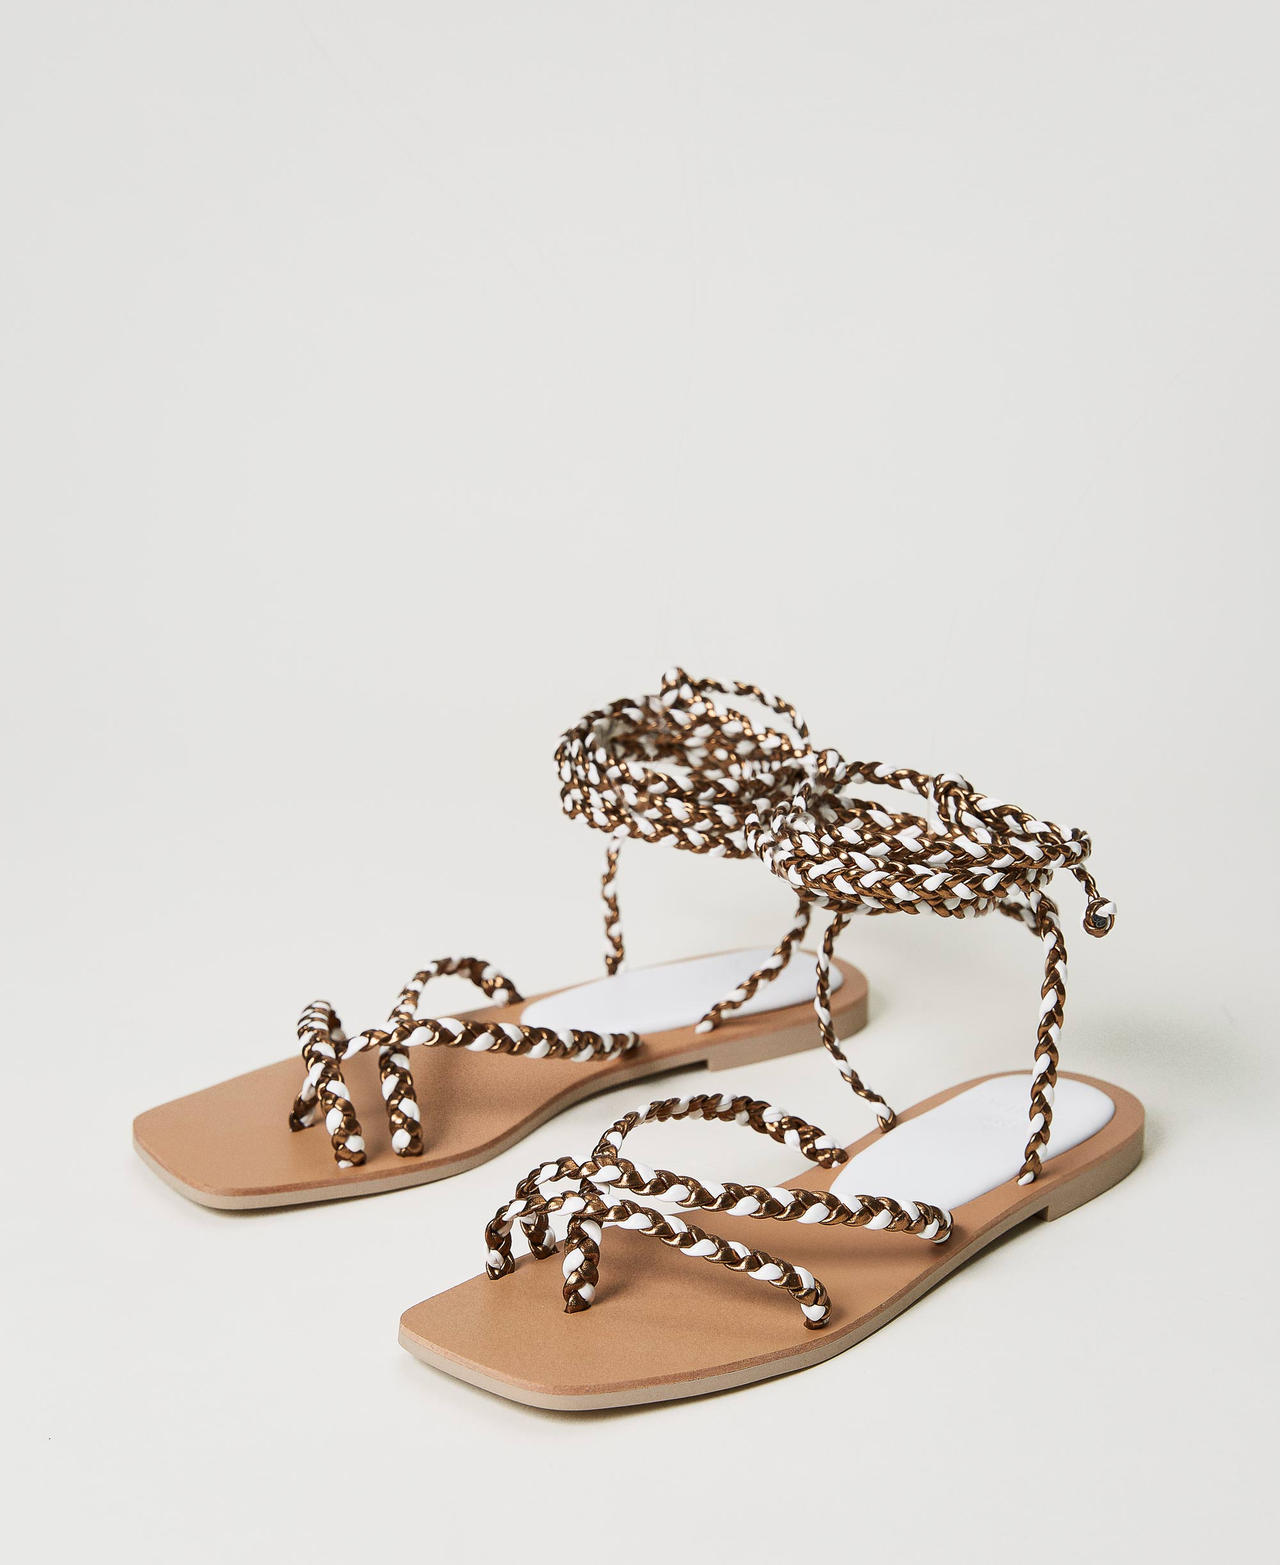 Sandales plates avec lacets tressés Bicolore Bronze/Blanc Cassé Femme 231LMPZBB-02